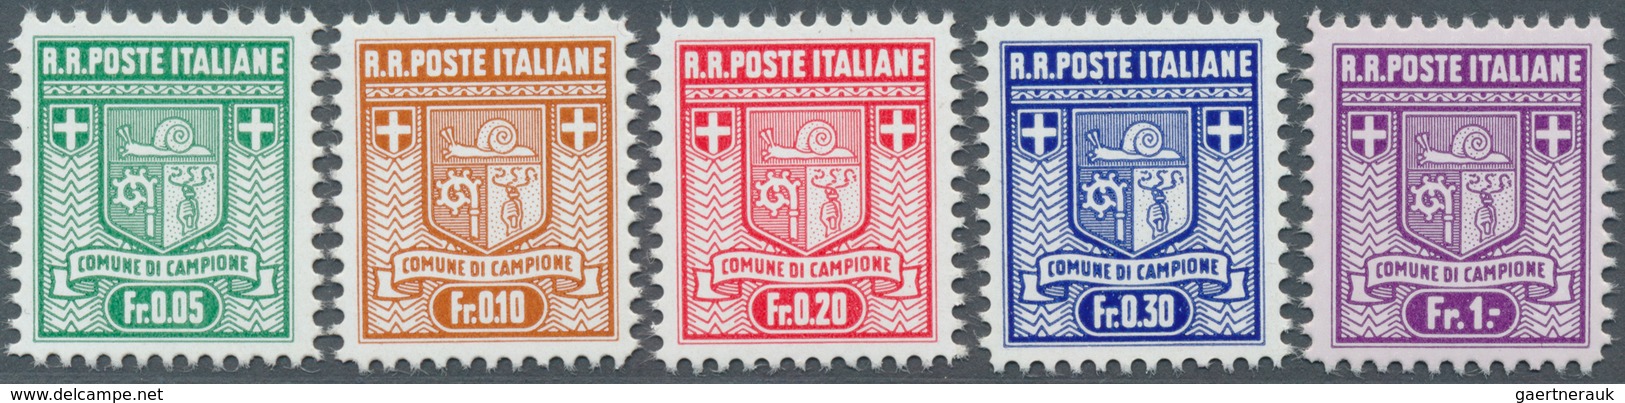 14832 Italien - Alliierte Militärregierung - Campione: 1944, Freimarken Wappen, 1. Auflage, Gez. 11 1/2, 5 - Non Classés